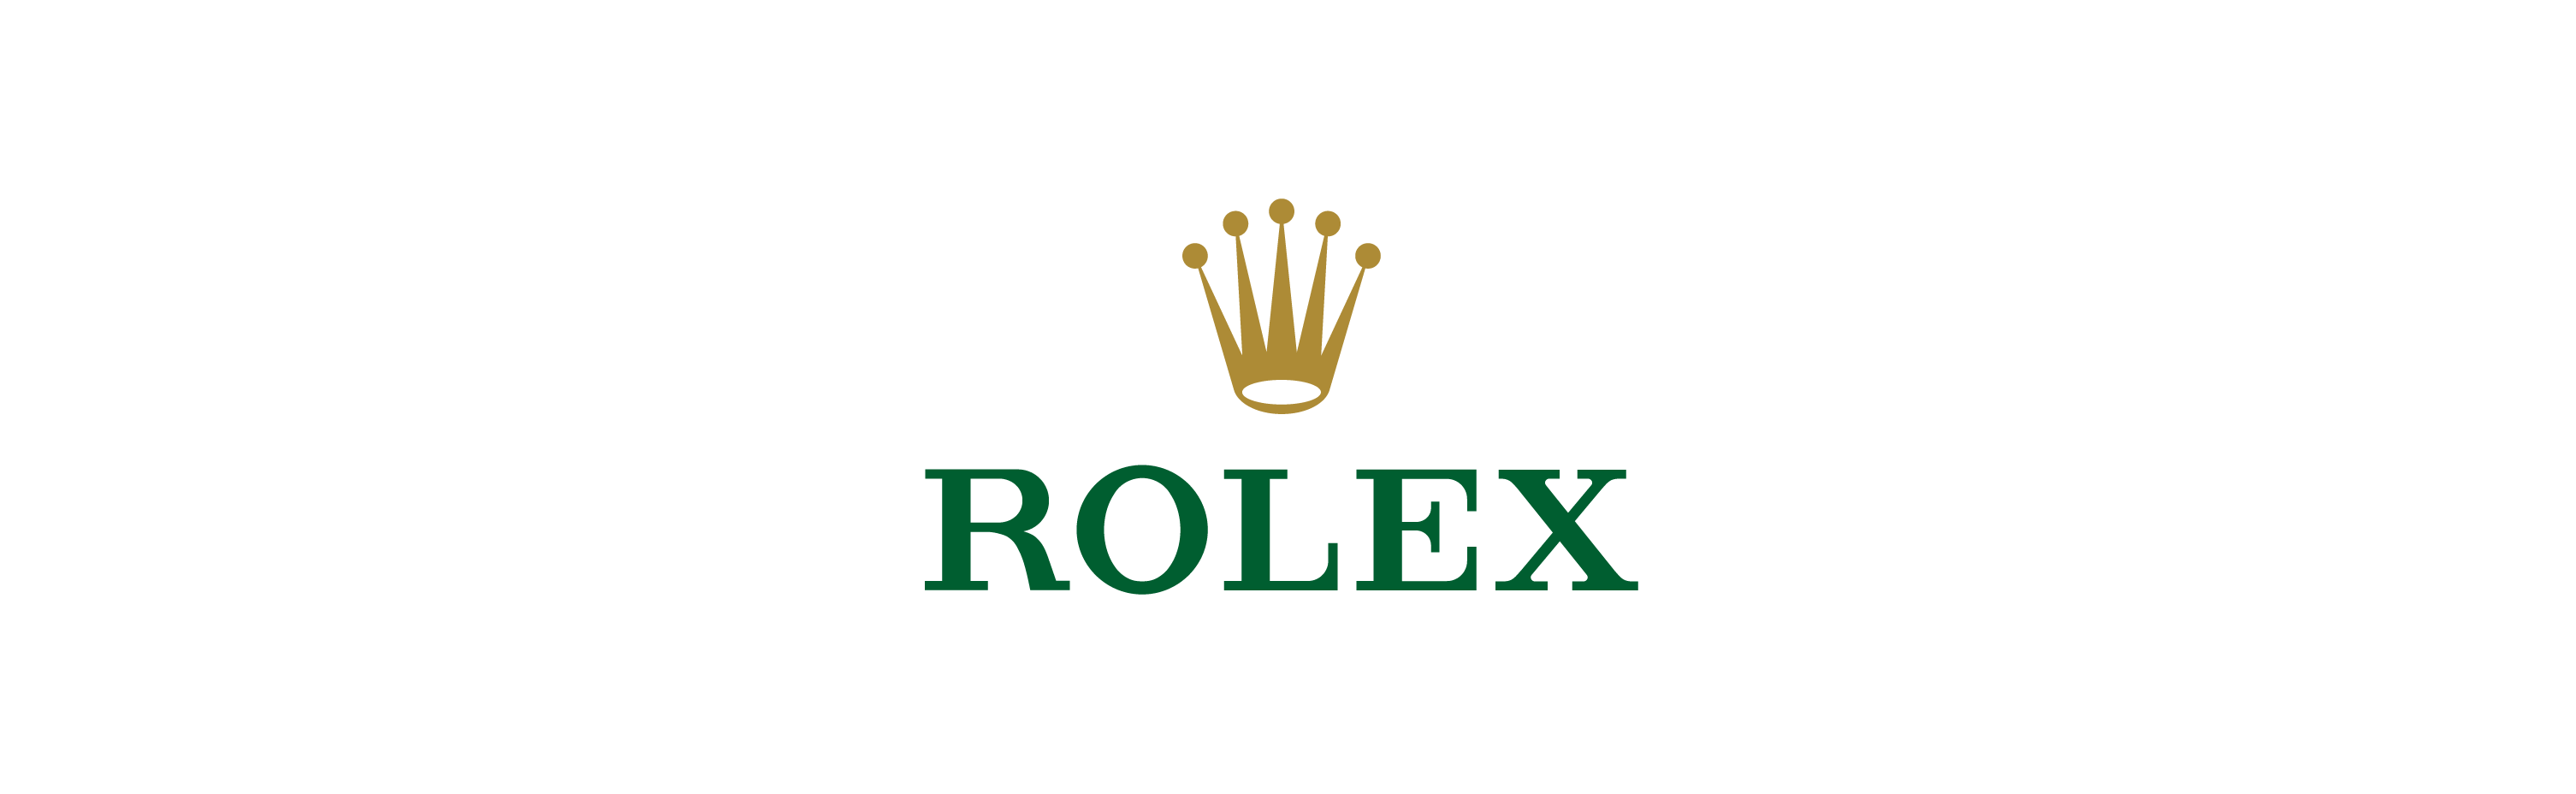 logo rolex wallpaper hd,verde,testo,font,grafica,disegno grafico